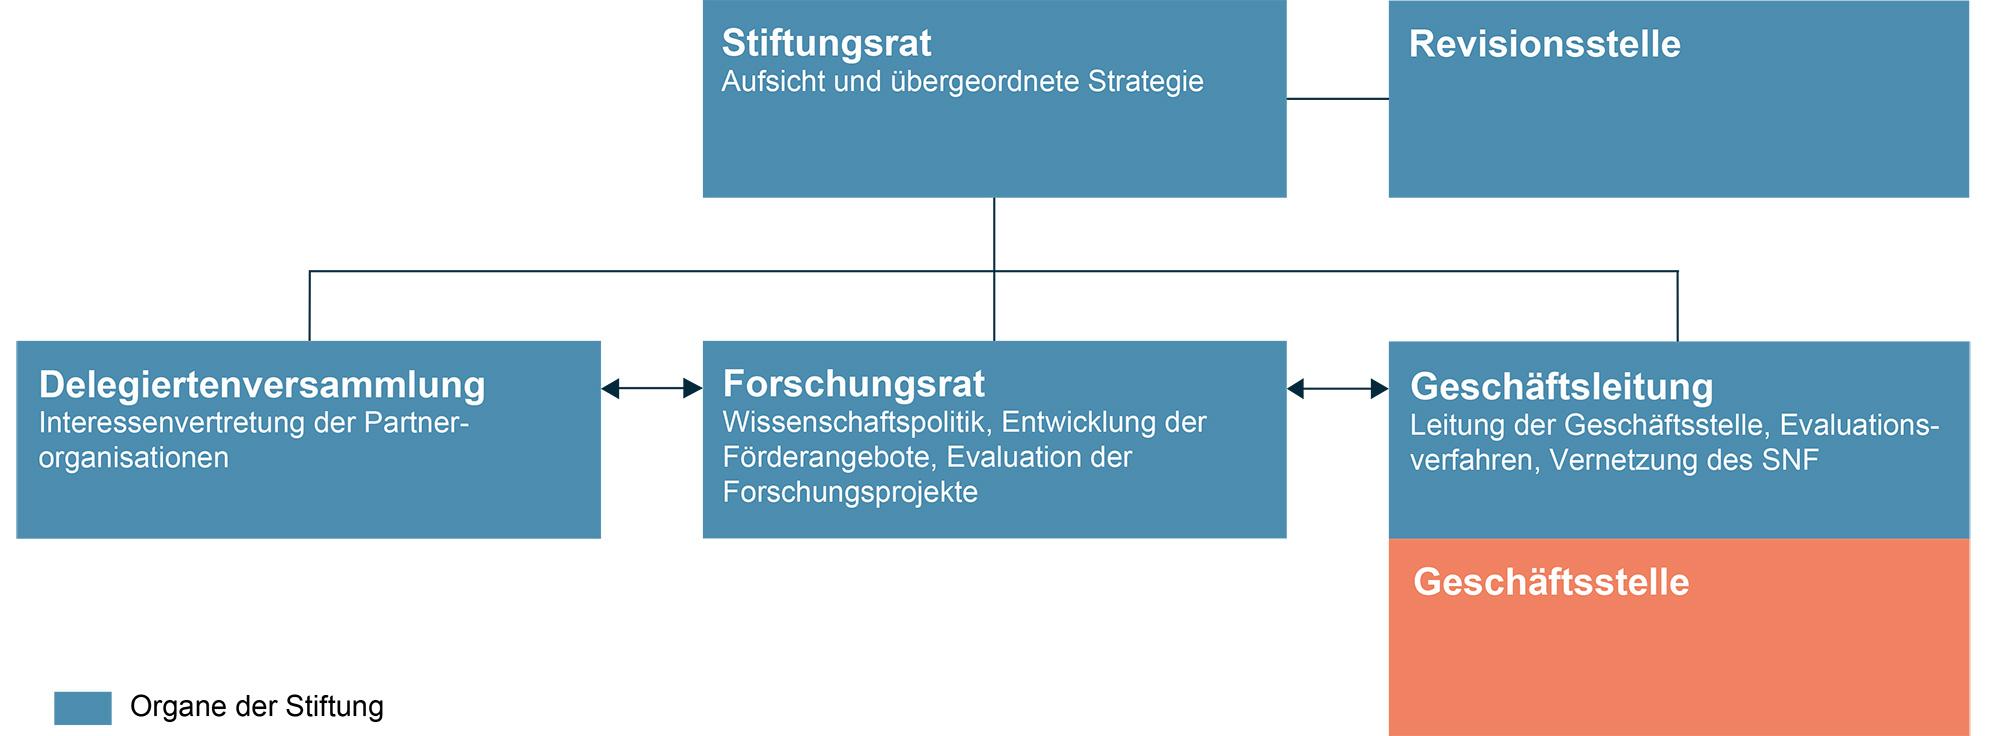 Zukunftsorientierte Struktur für den SNF (mit Text)